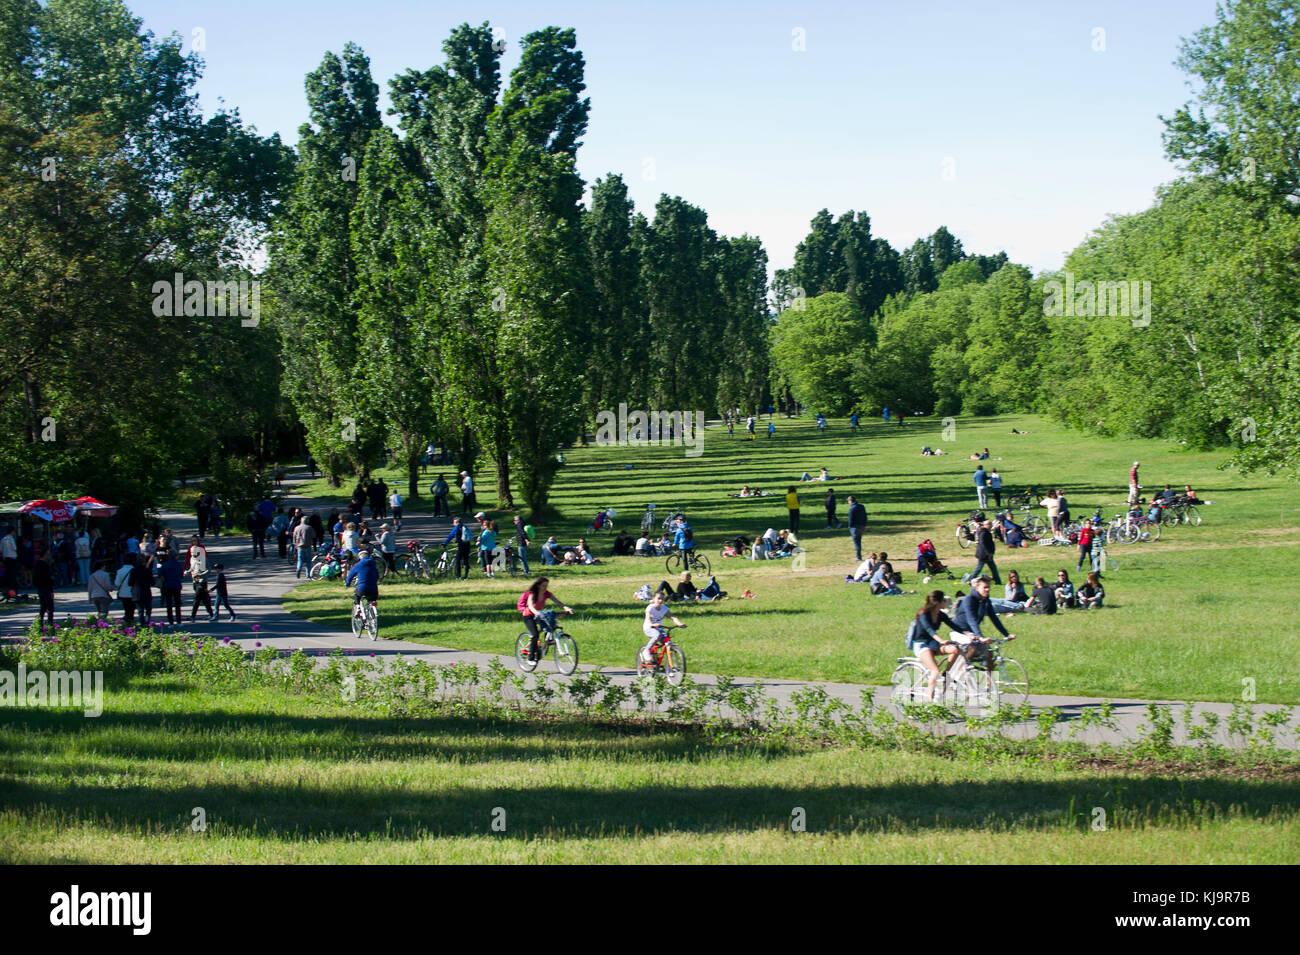 Parco Nord Milano ist ein Metropolitan suburban Park am nördlichen Stadtrand von Mailand. Klassifiziert als Regional, es erstreckt sich zwischen den Städten Mailand, Bresso, Cusano Milanino, Ausfahrt Cormano, Cinisello Balsamo, Sesto San Giovanni. Stockfoto